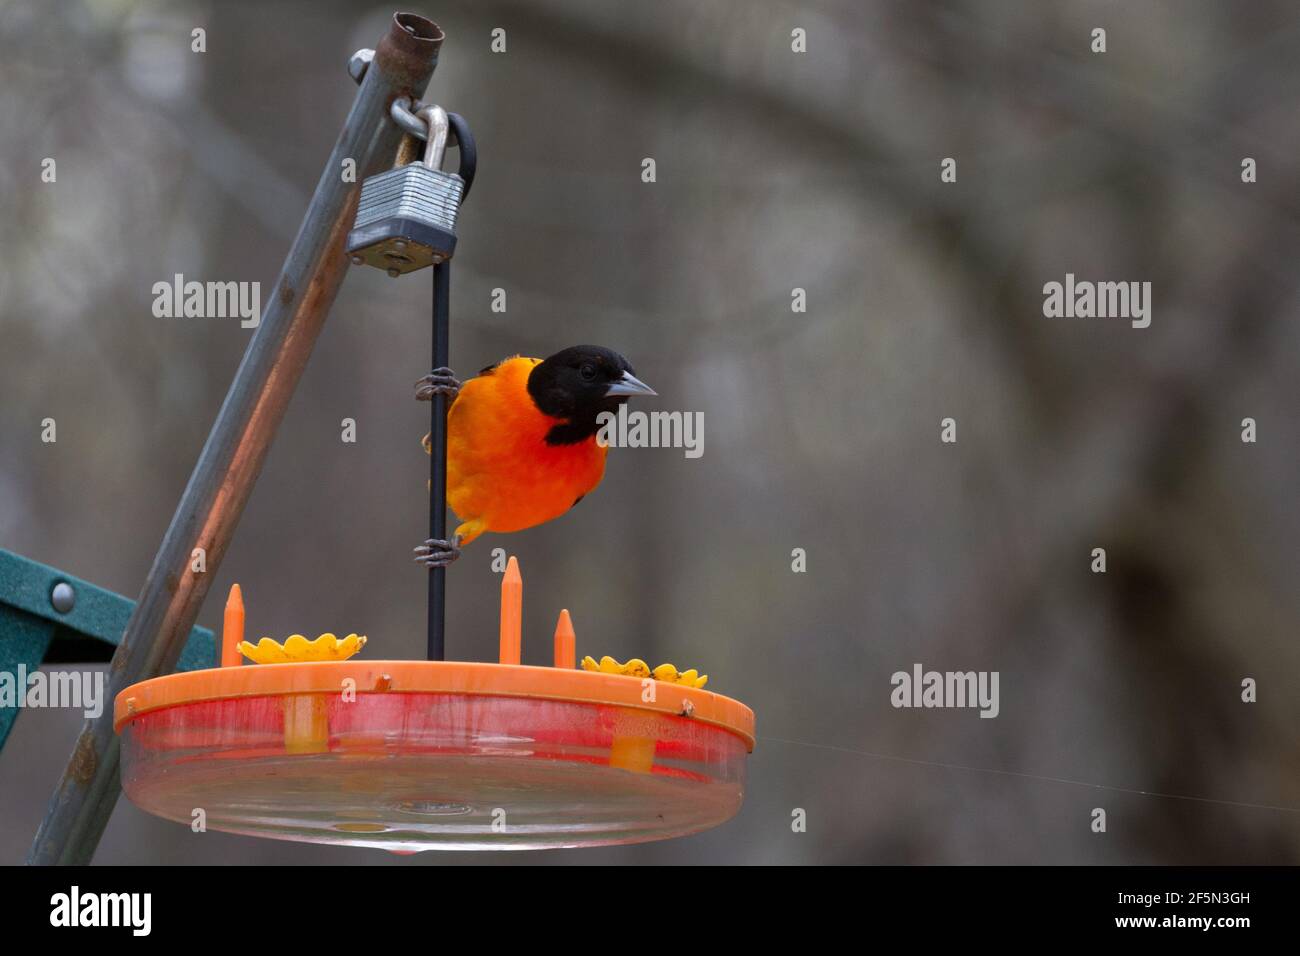 L'oriole de Baltimore mâle se nourrissant à un mangeoire à oiseaux orange au printemps, avec un fond marron. Banque D'Images